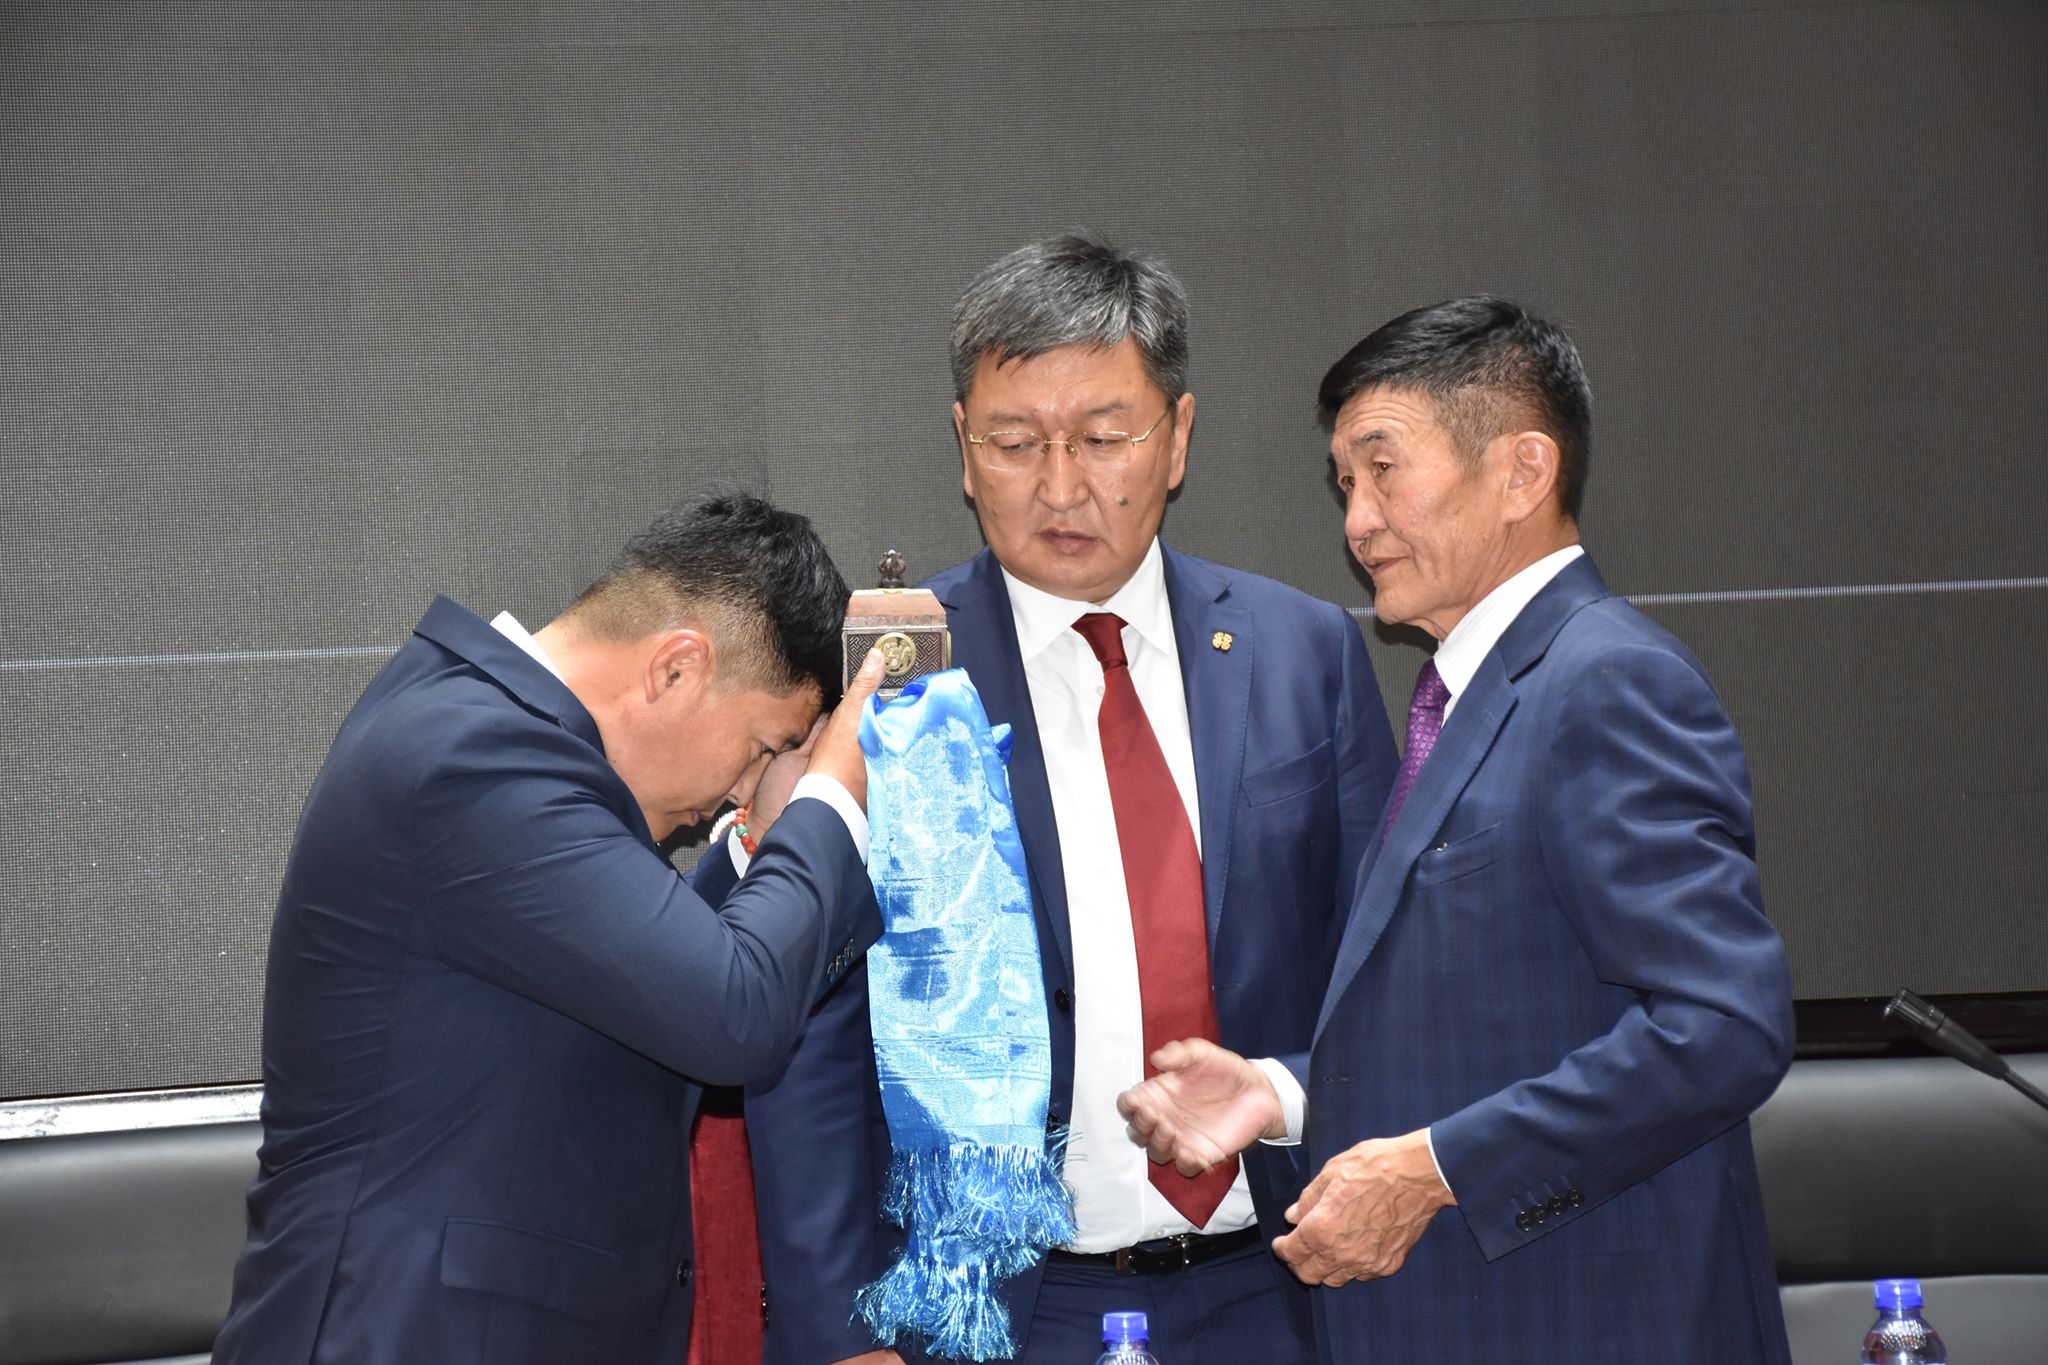 Х.Нямбаатар: Монгол төрийн туршлагатай, дархан улс төрчөөс ажил хүлээн авч, өндөр хариуцлага оногдож байна